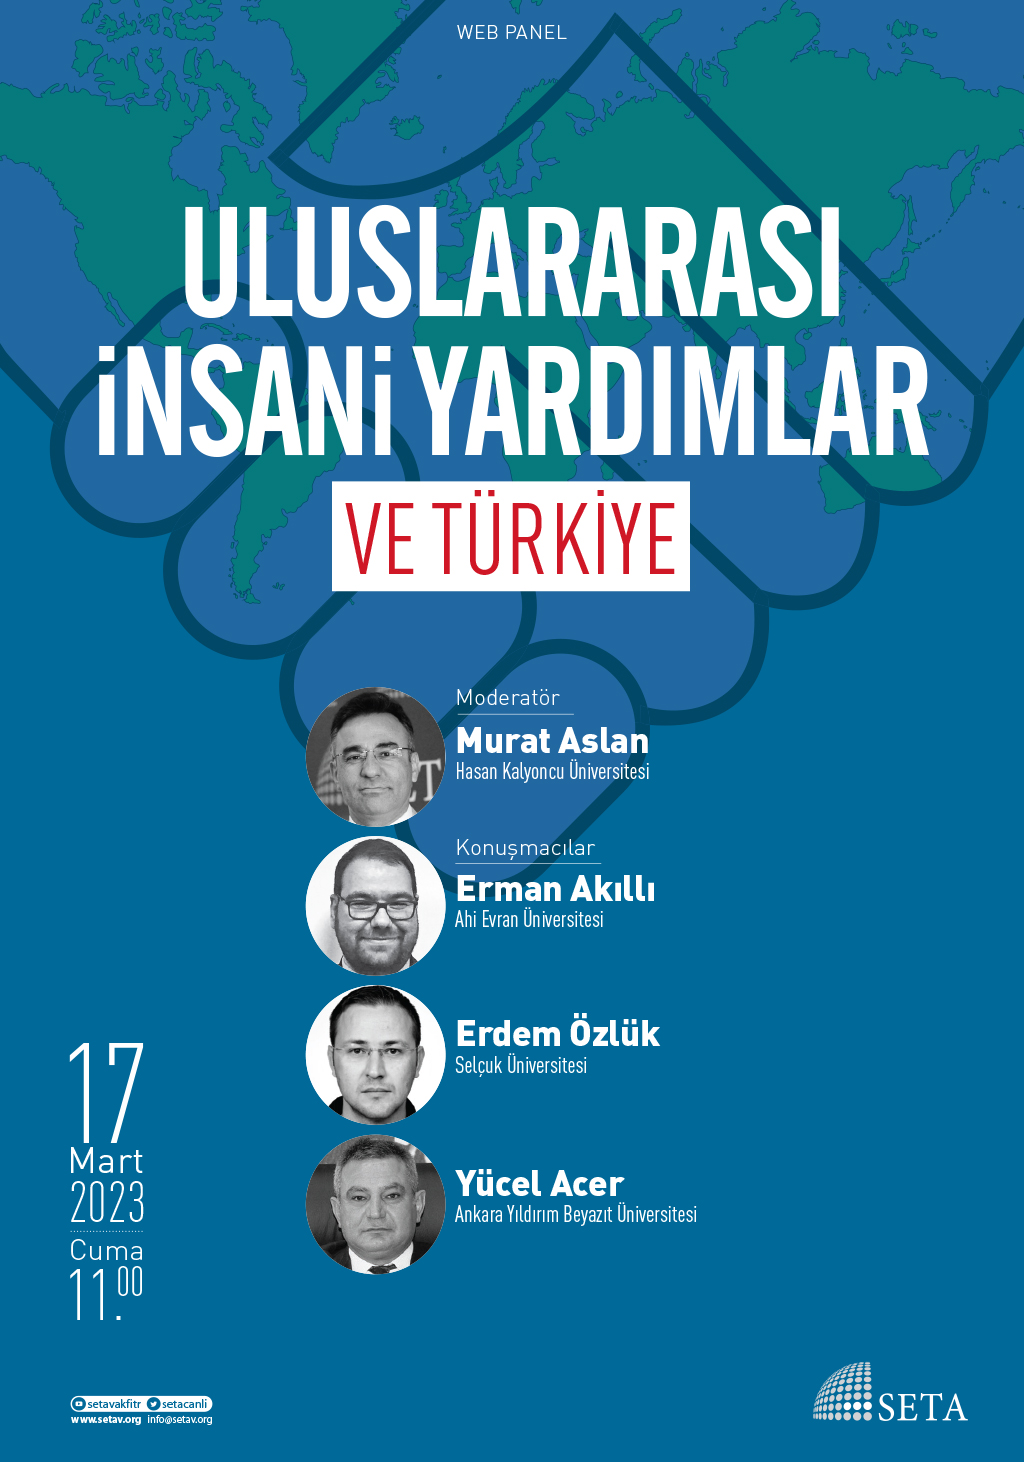 Web Panel: Uluslararası İnsani Yardımlar ve Türkiye